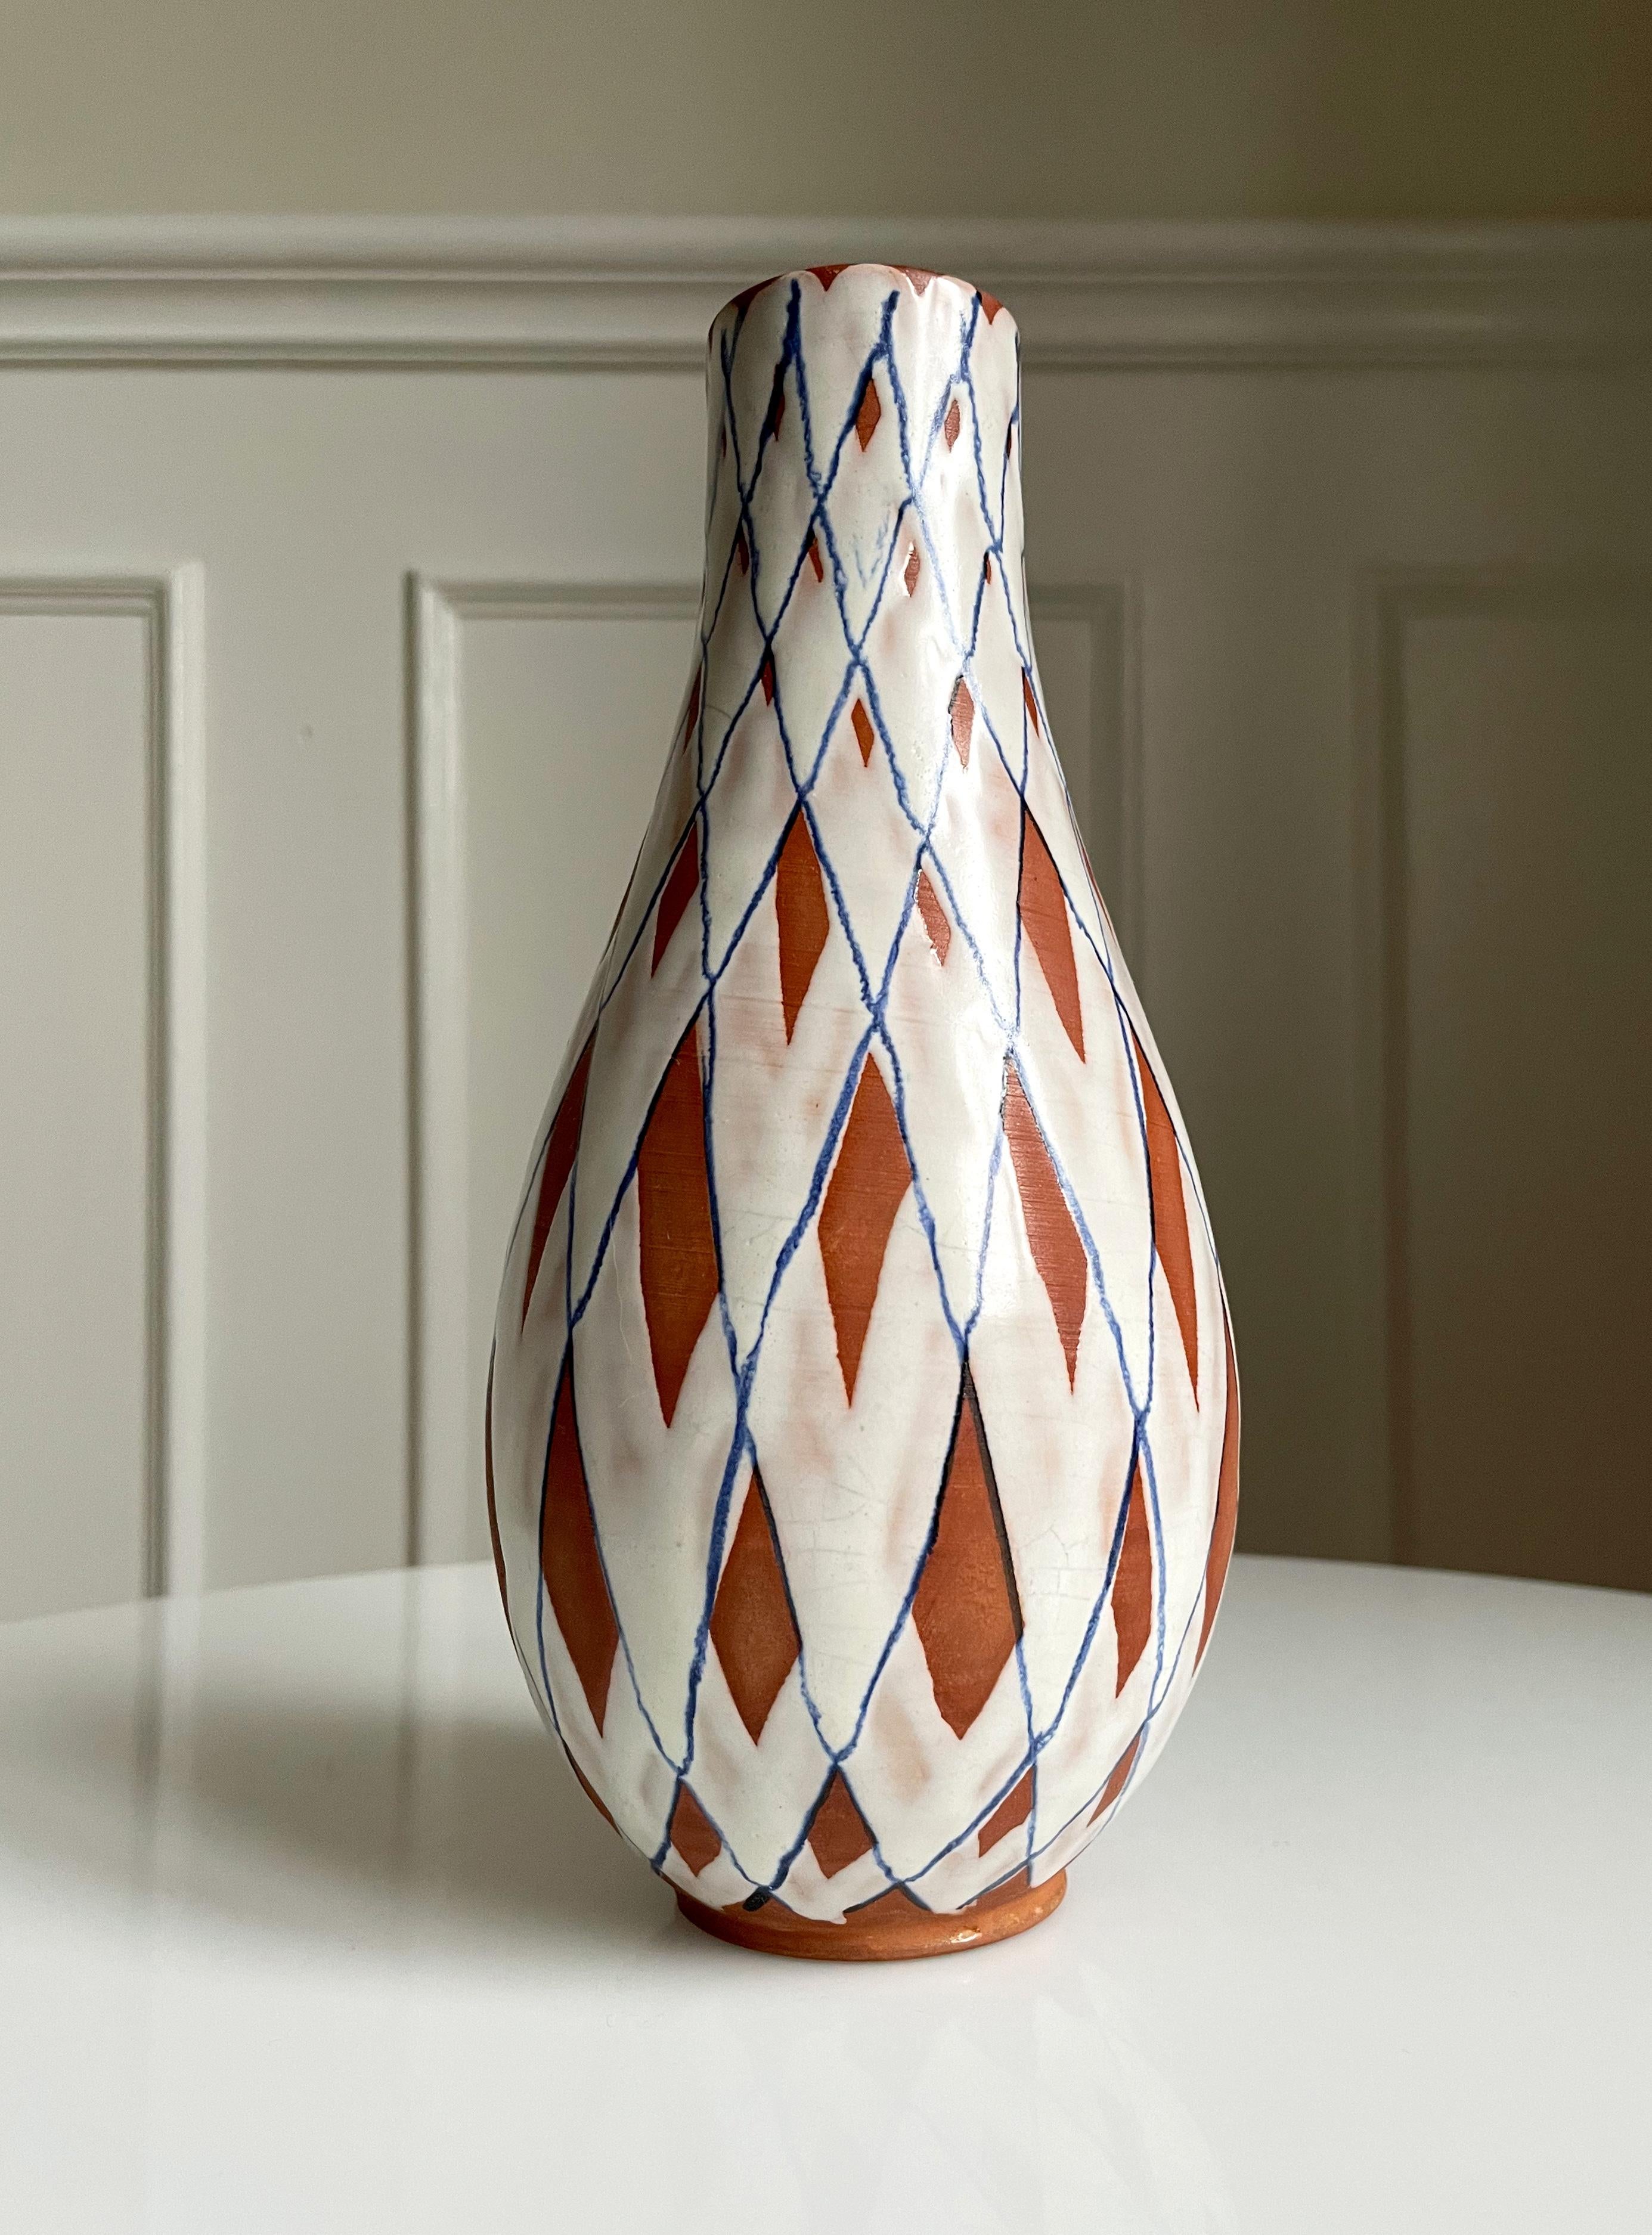 Handbemalte 80 Jahre alte Keramikvase mit Schachbrettmuster, hergestellt von Gabriel Keramik in Schweden in den 1940er Jahren. Teilweise weiß glasiert und mit einem dünnen blauen Streifen versehen, teilweise unglasiert und roh. Die Innenseite ist